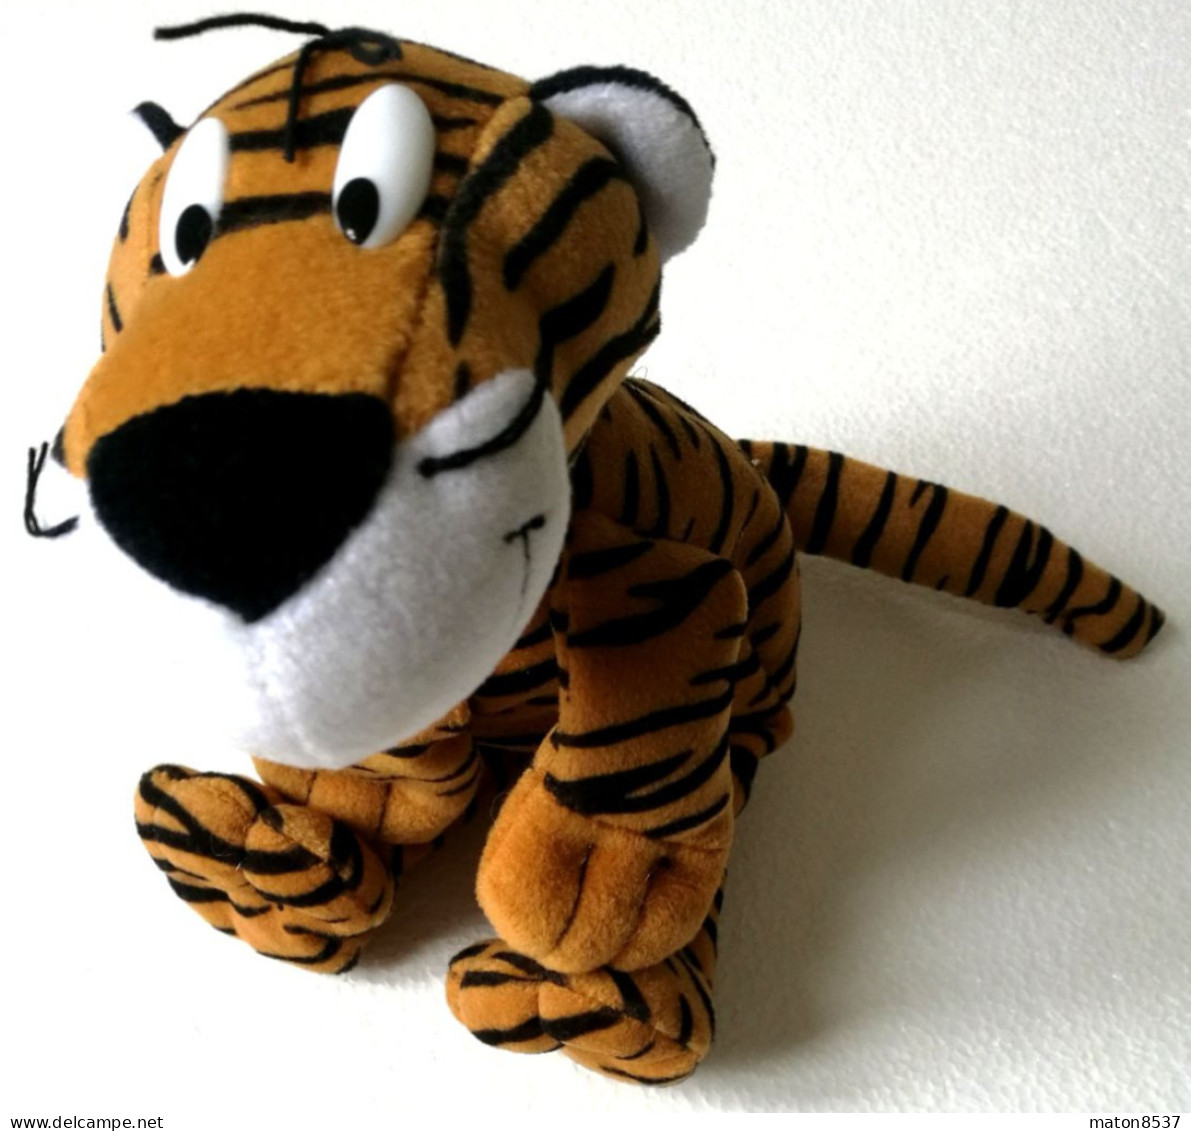 Kinder : Maxi-Ei -Inhalte - Plüschfigur  Tiger 2003 - Plüschfigur  Tiger - Ü-Ei